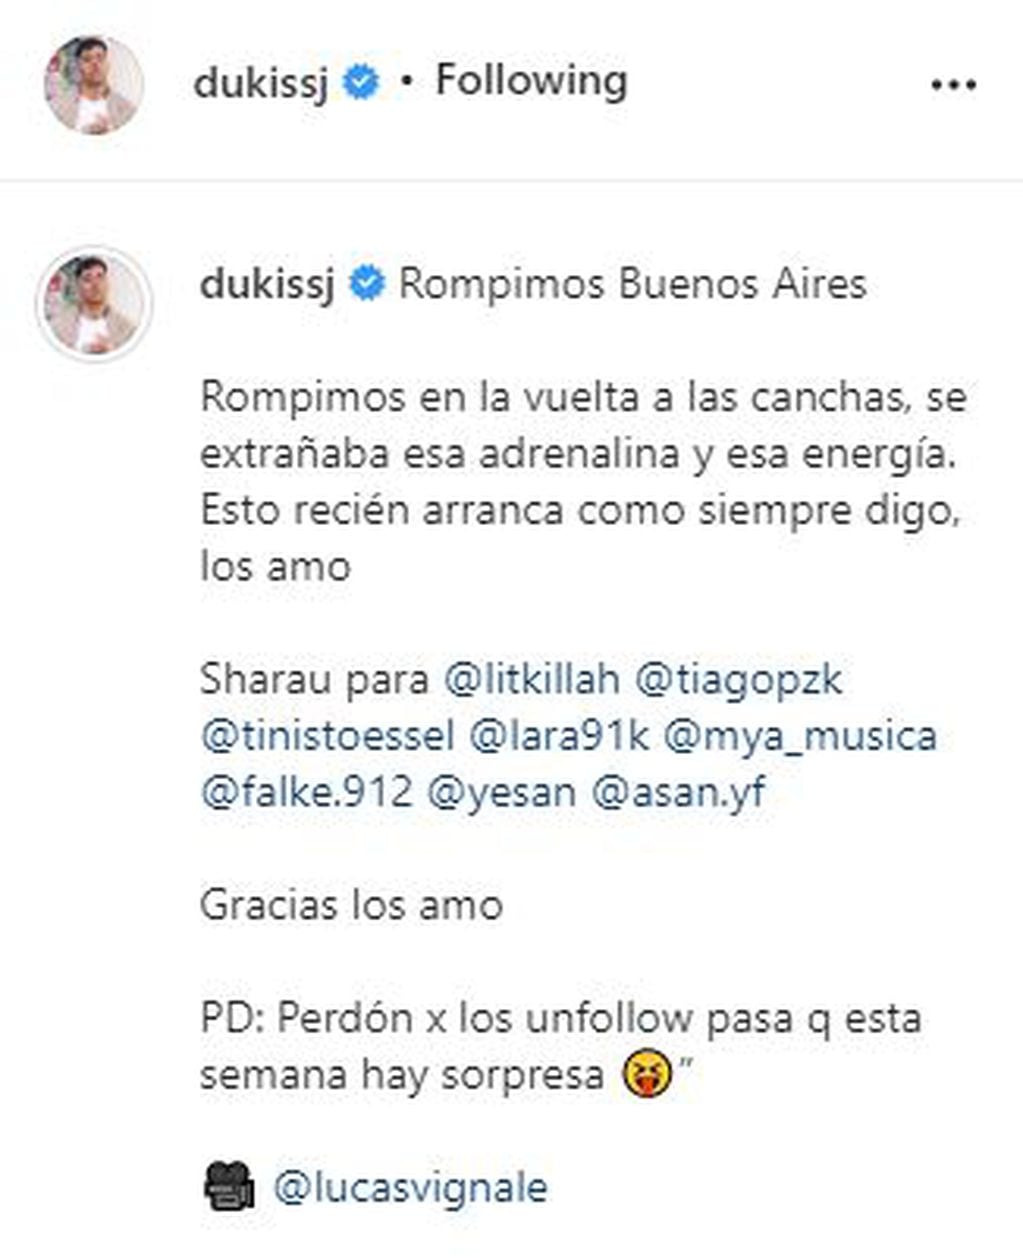 El mensaje de Duki en Instagram.